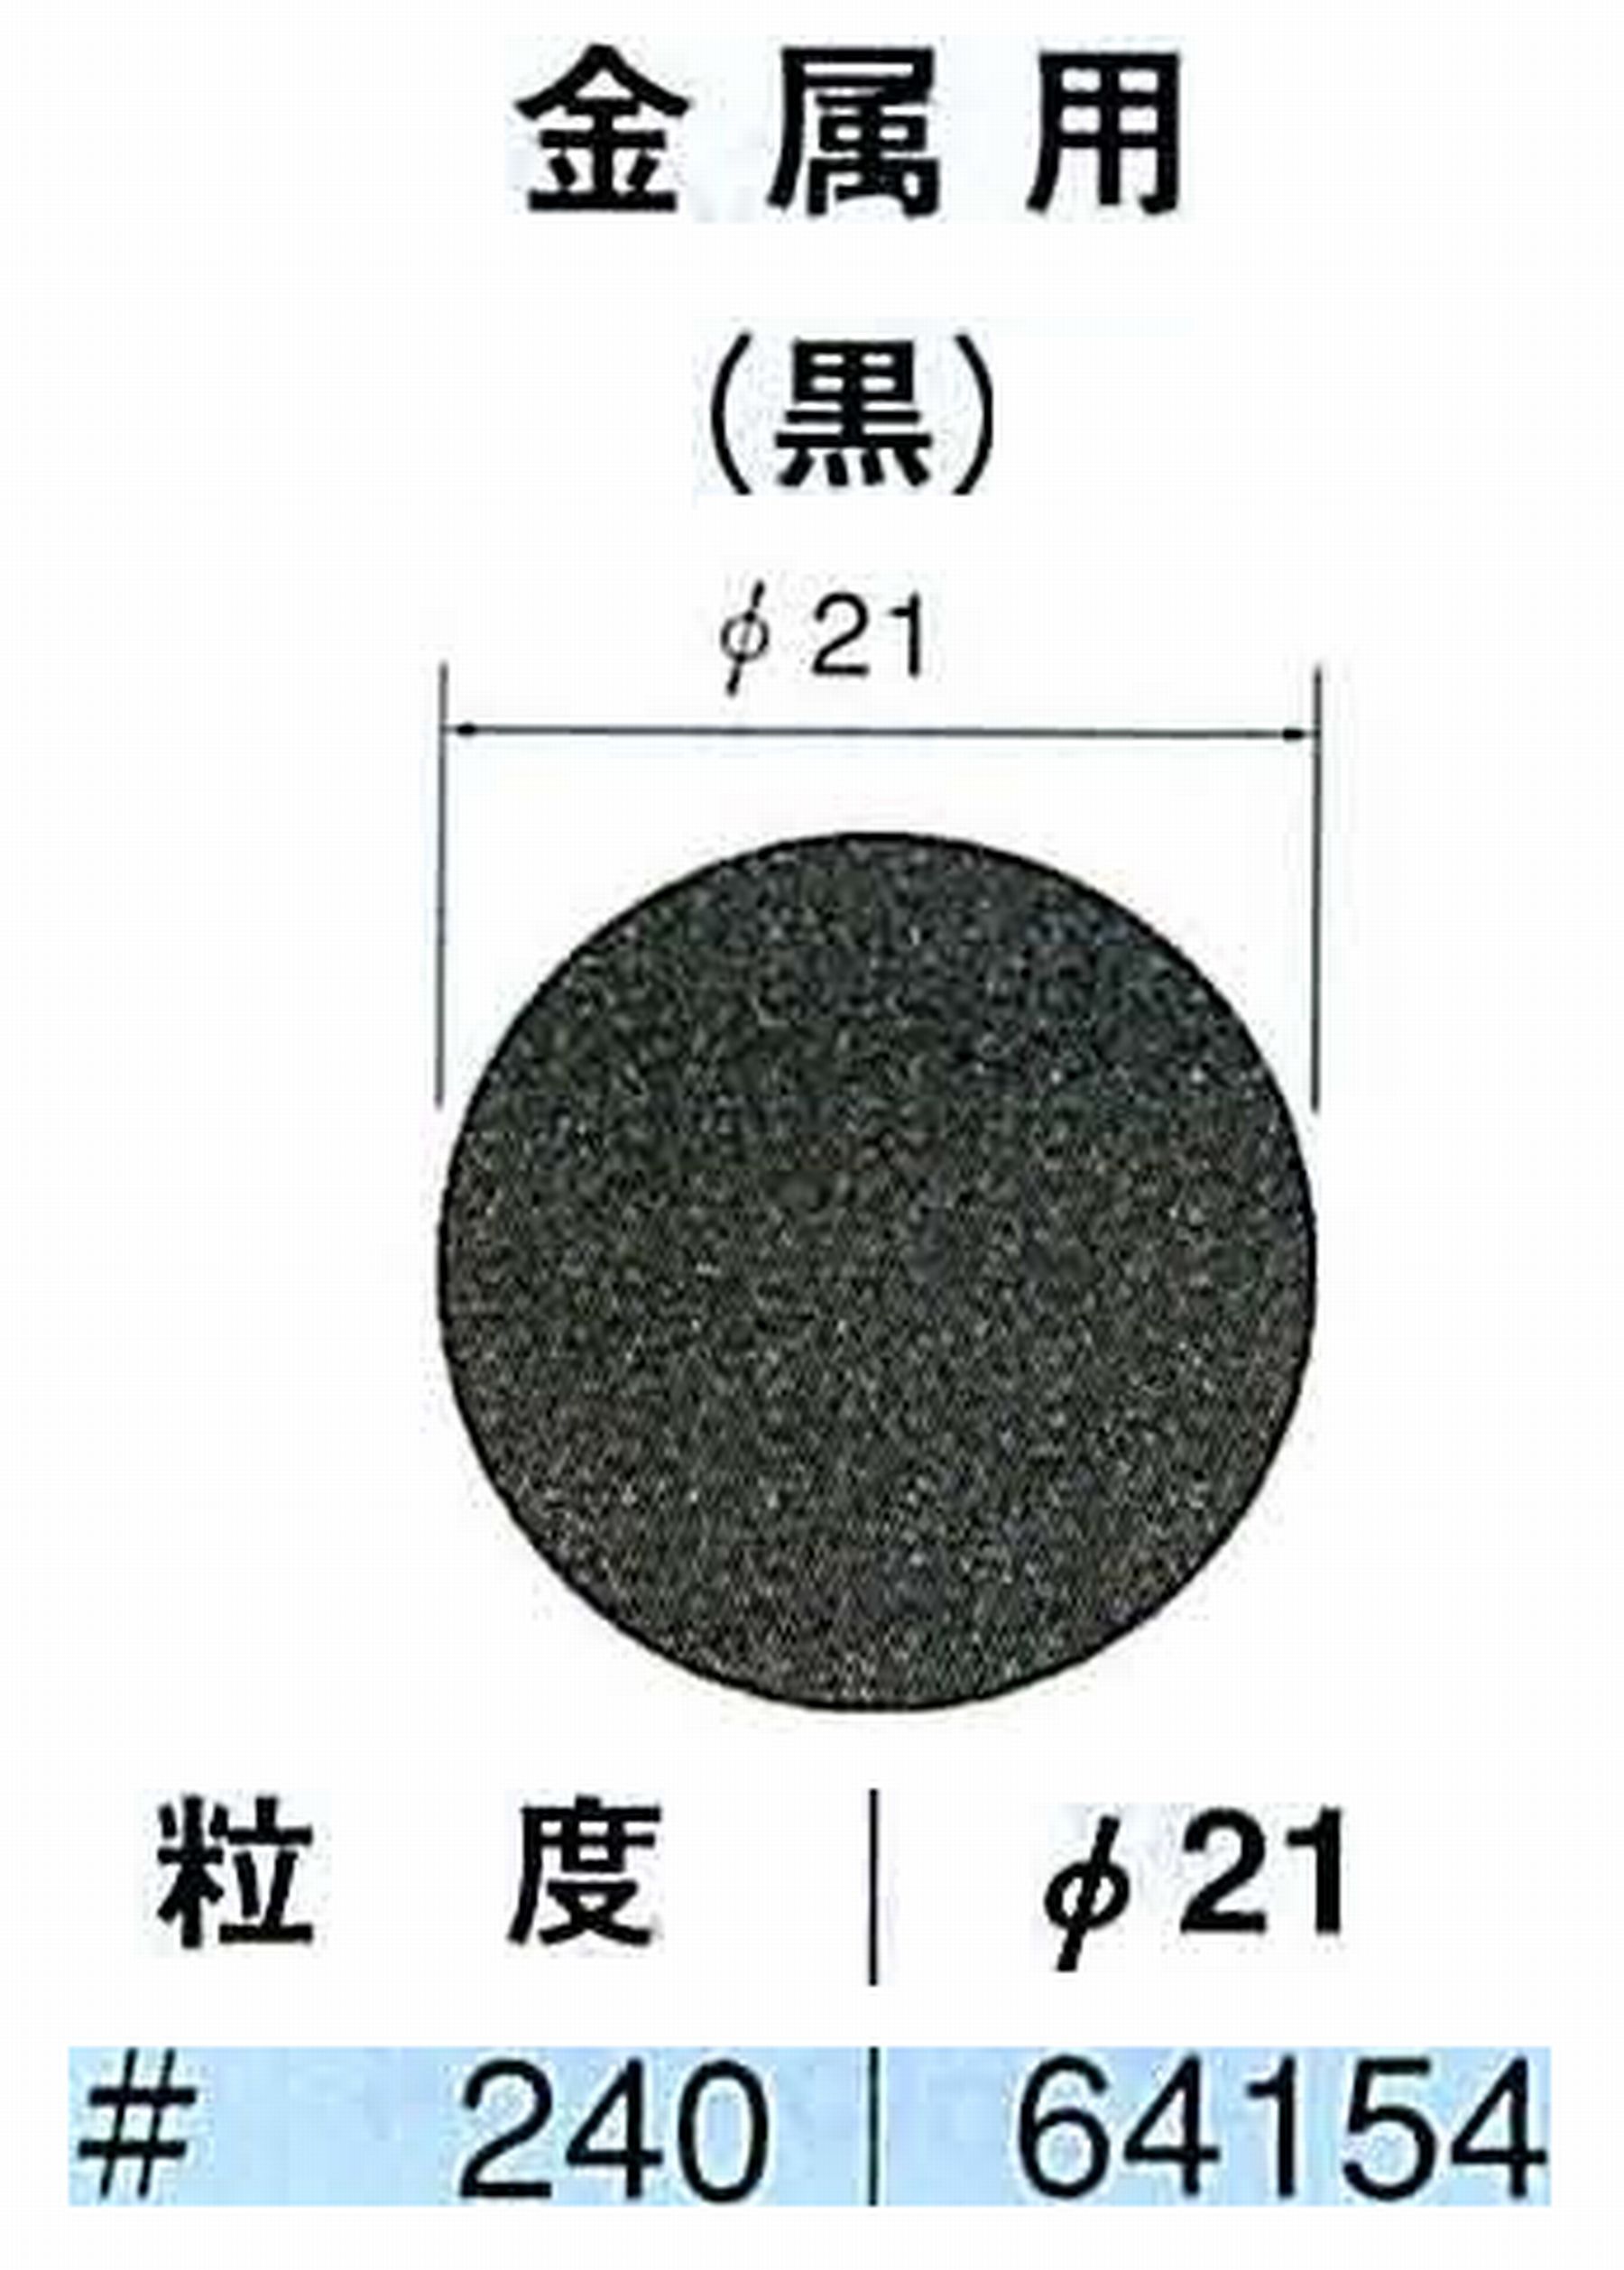 ナカニシ/NAKANISHI アングルグラインダ(電動・エアー) アングルアタッチメント専用工具 サンドペーパーディスク(紙基材タイプ)裏面のり処理 64154